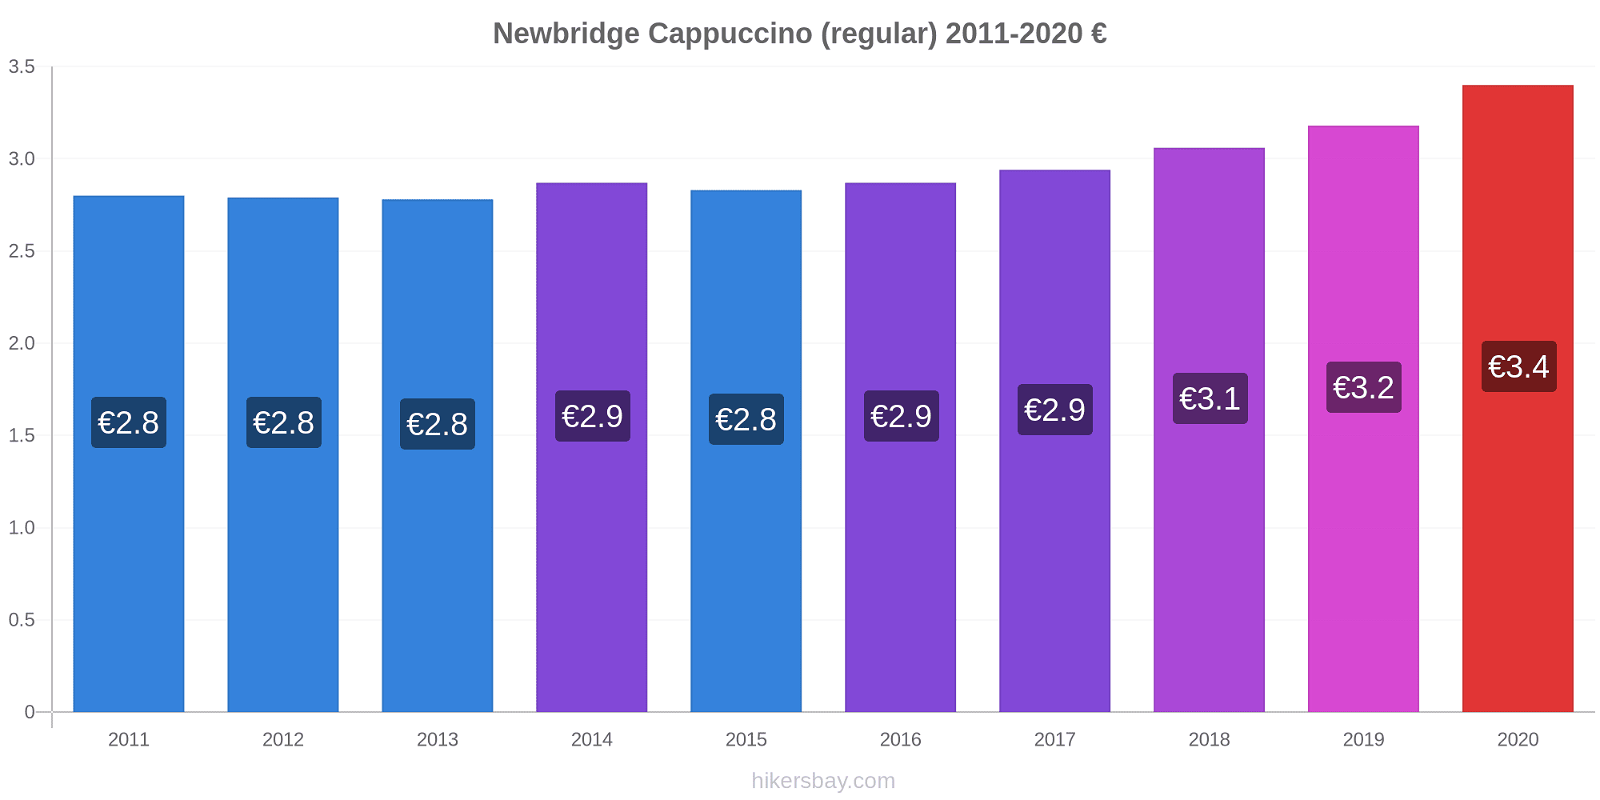 Newbridge price changes Cappuccino (regular) hikersbay.com